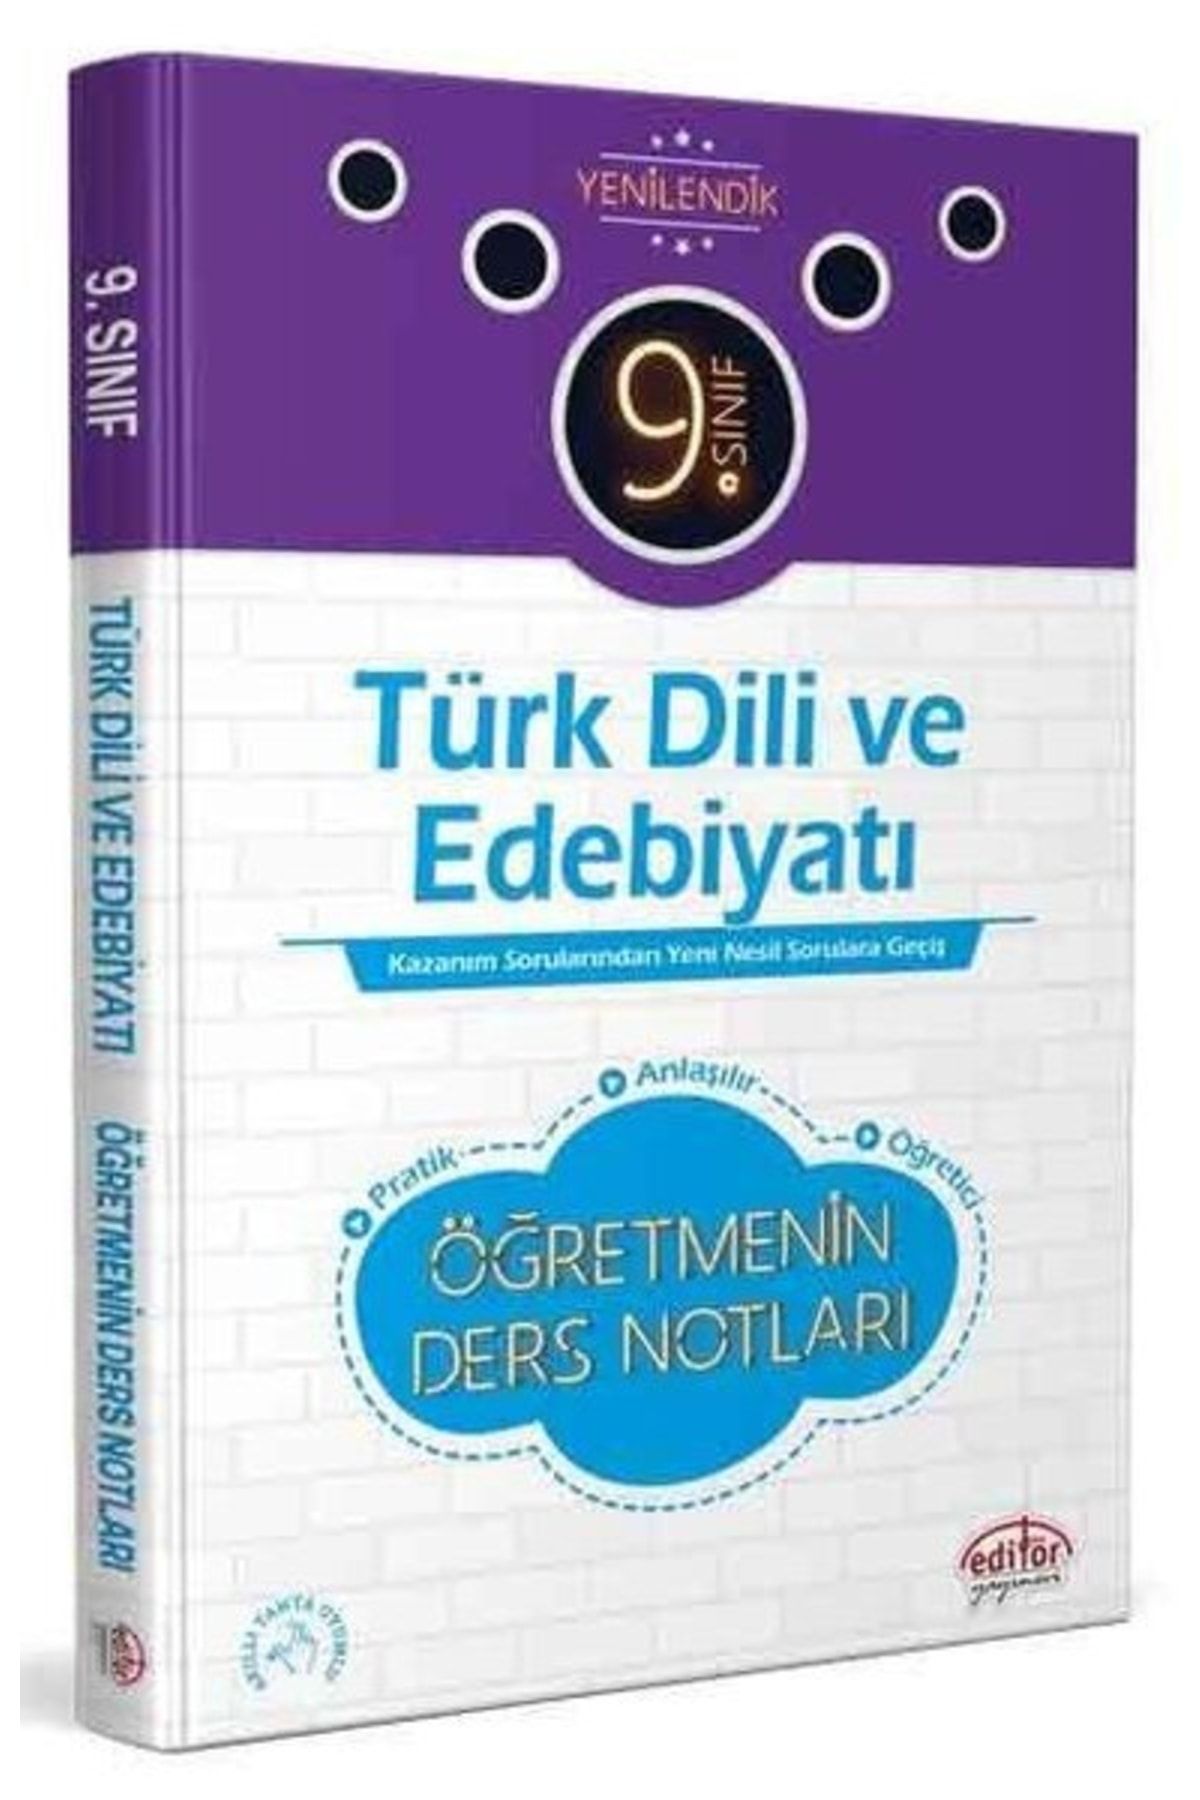 Editör Yayınları 9.sınıf Türk Dili Edebiyatı Öğretmenin Ders Notları